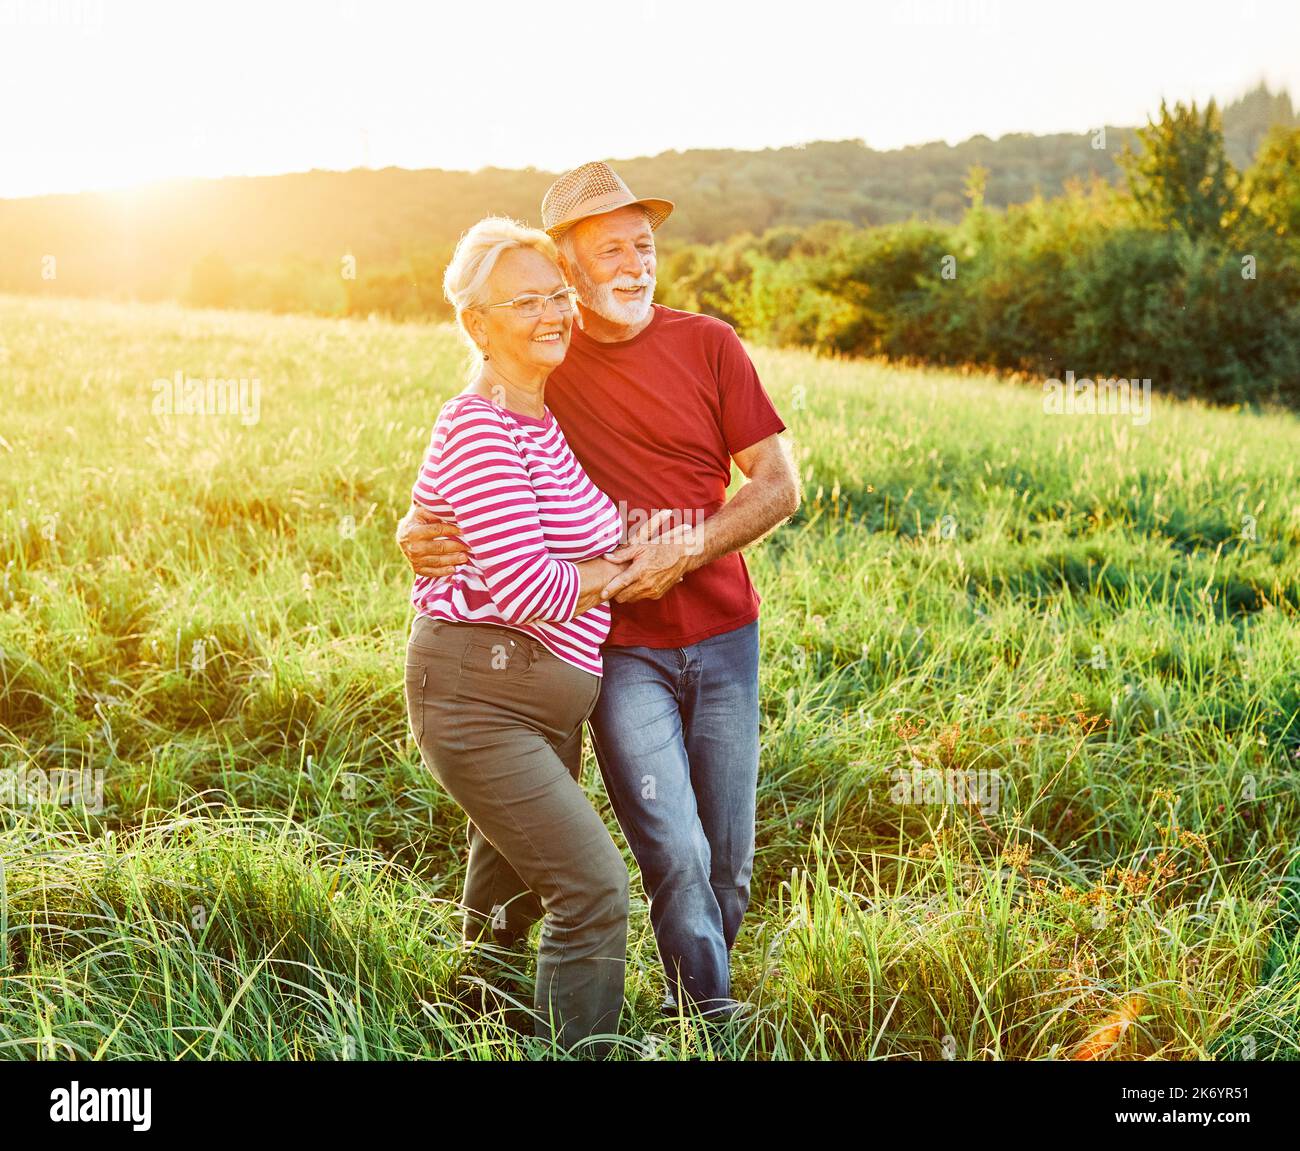 Frau Mann im Freien Senior paar glücklich Lifestyle Ruhestand zusammen lächelnd Liebe alte Natur reifen Stockfoto